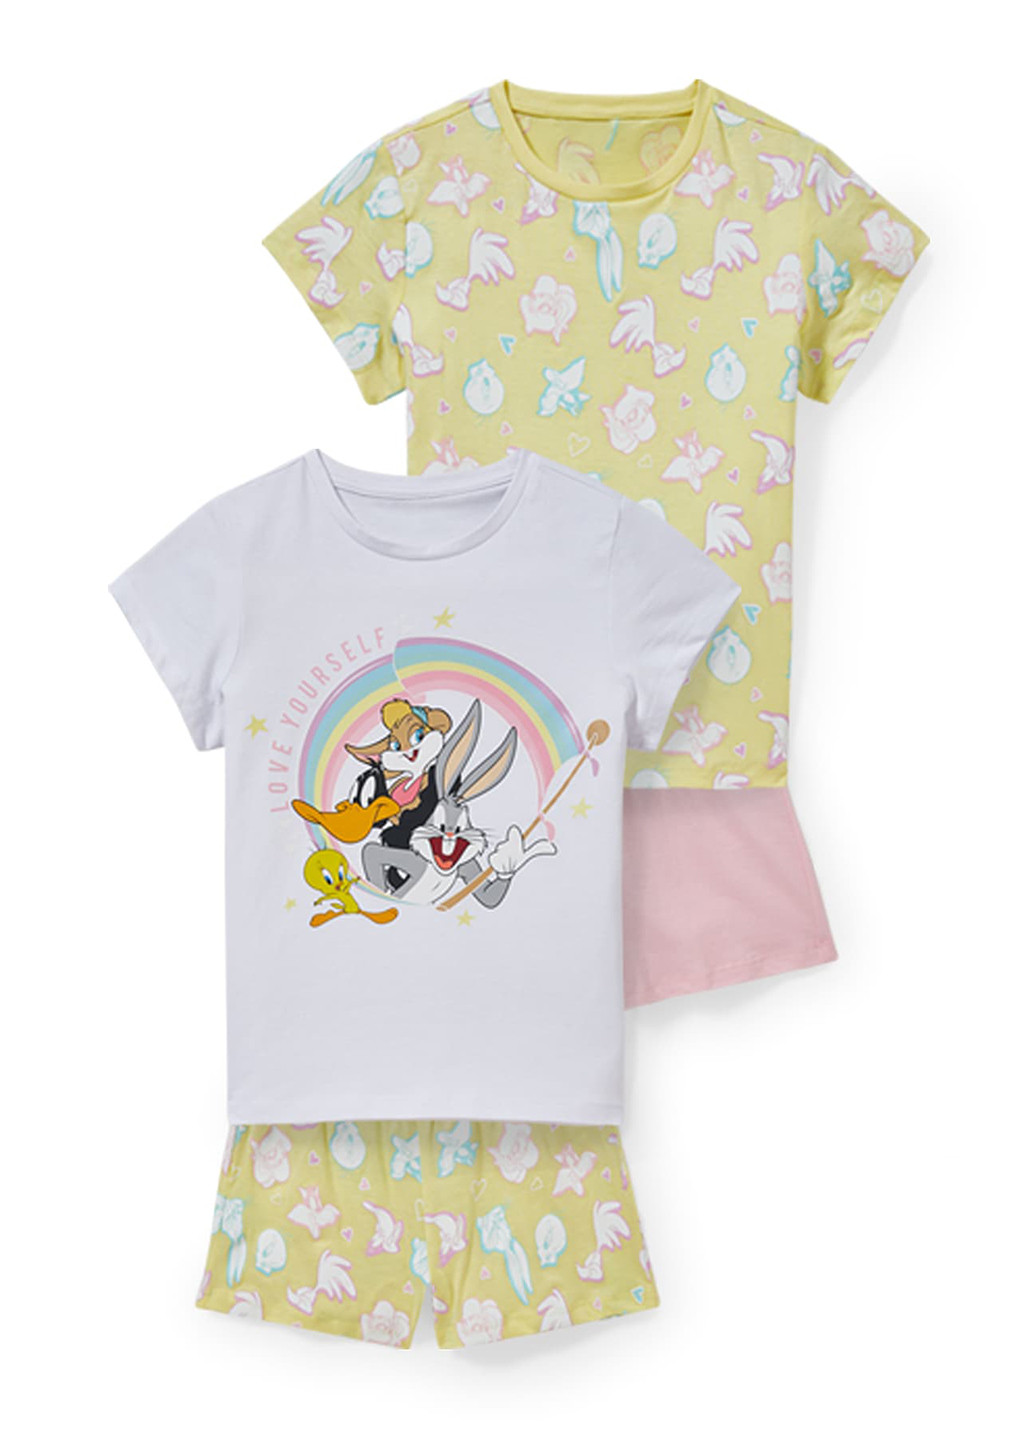 Комбинированная всесезон пижама (футболка (2 шт.), шорты (2 шт.)) футболка + шорты C&A